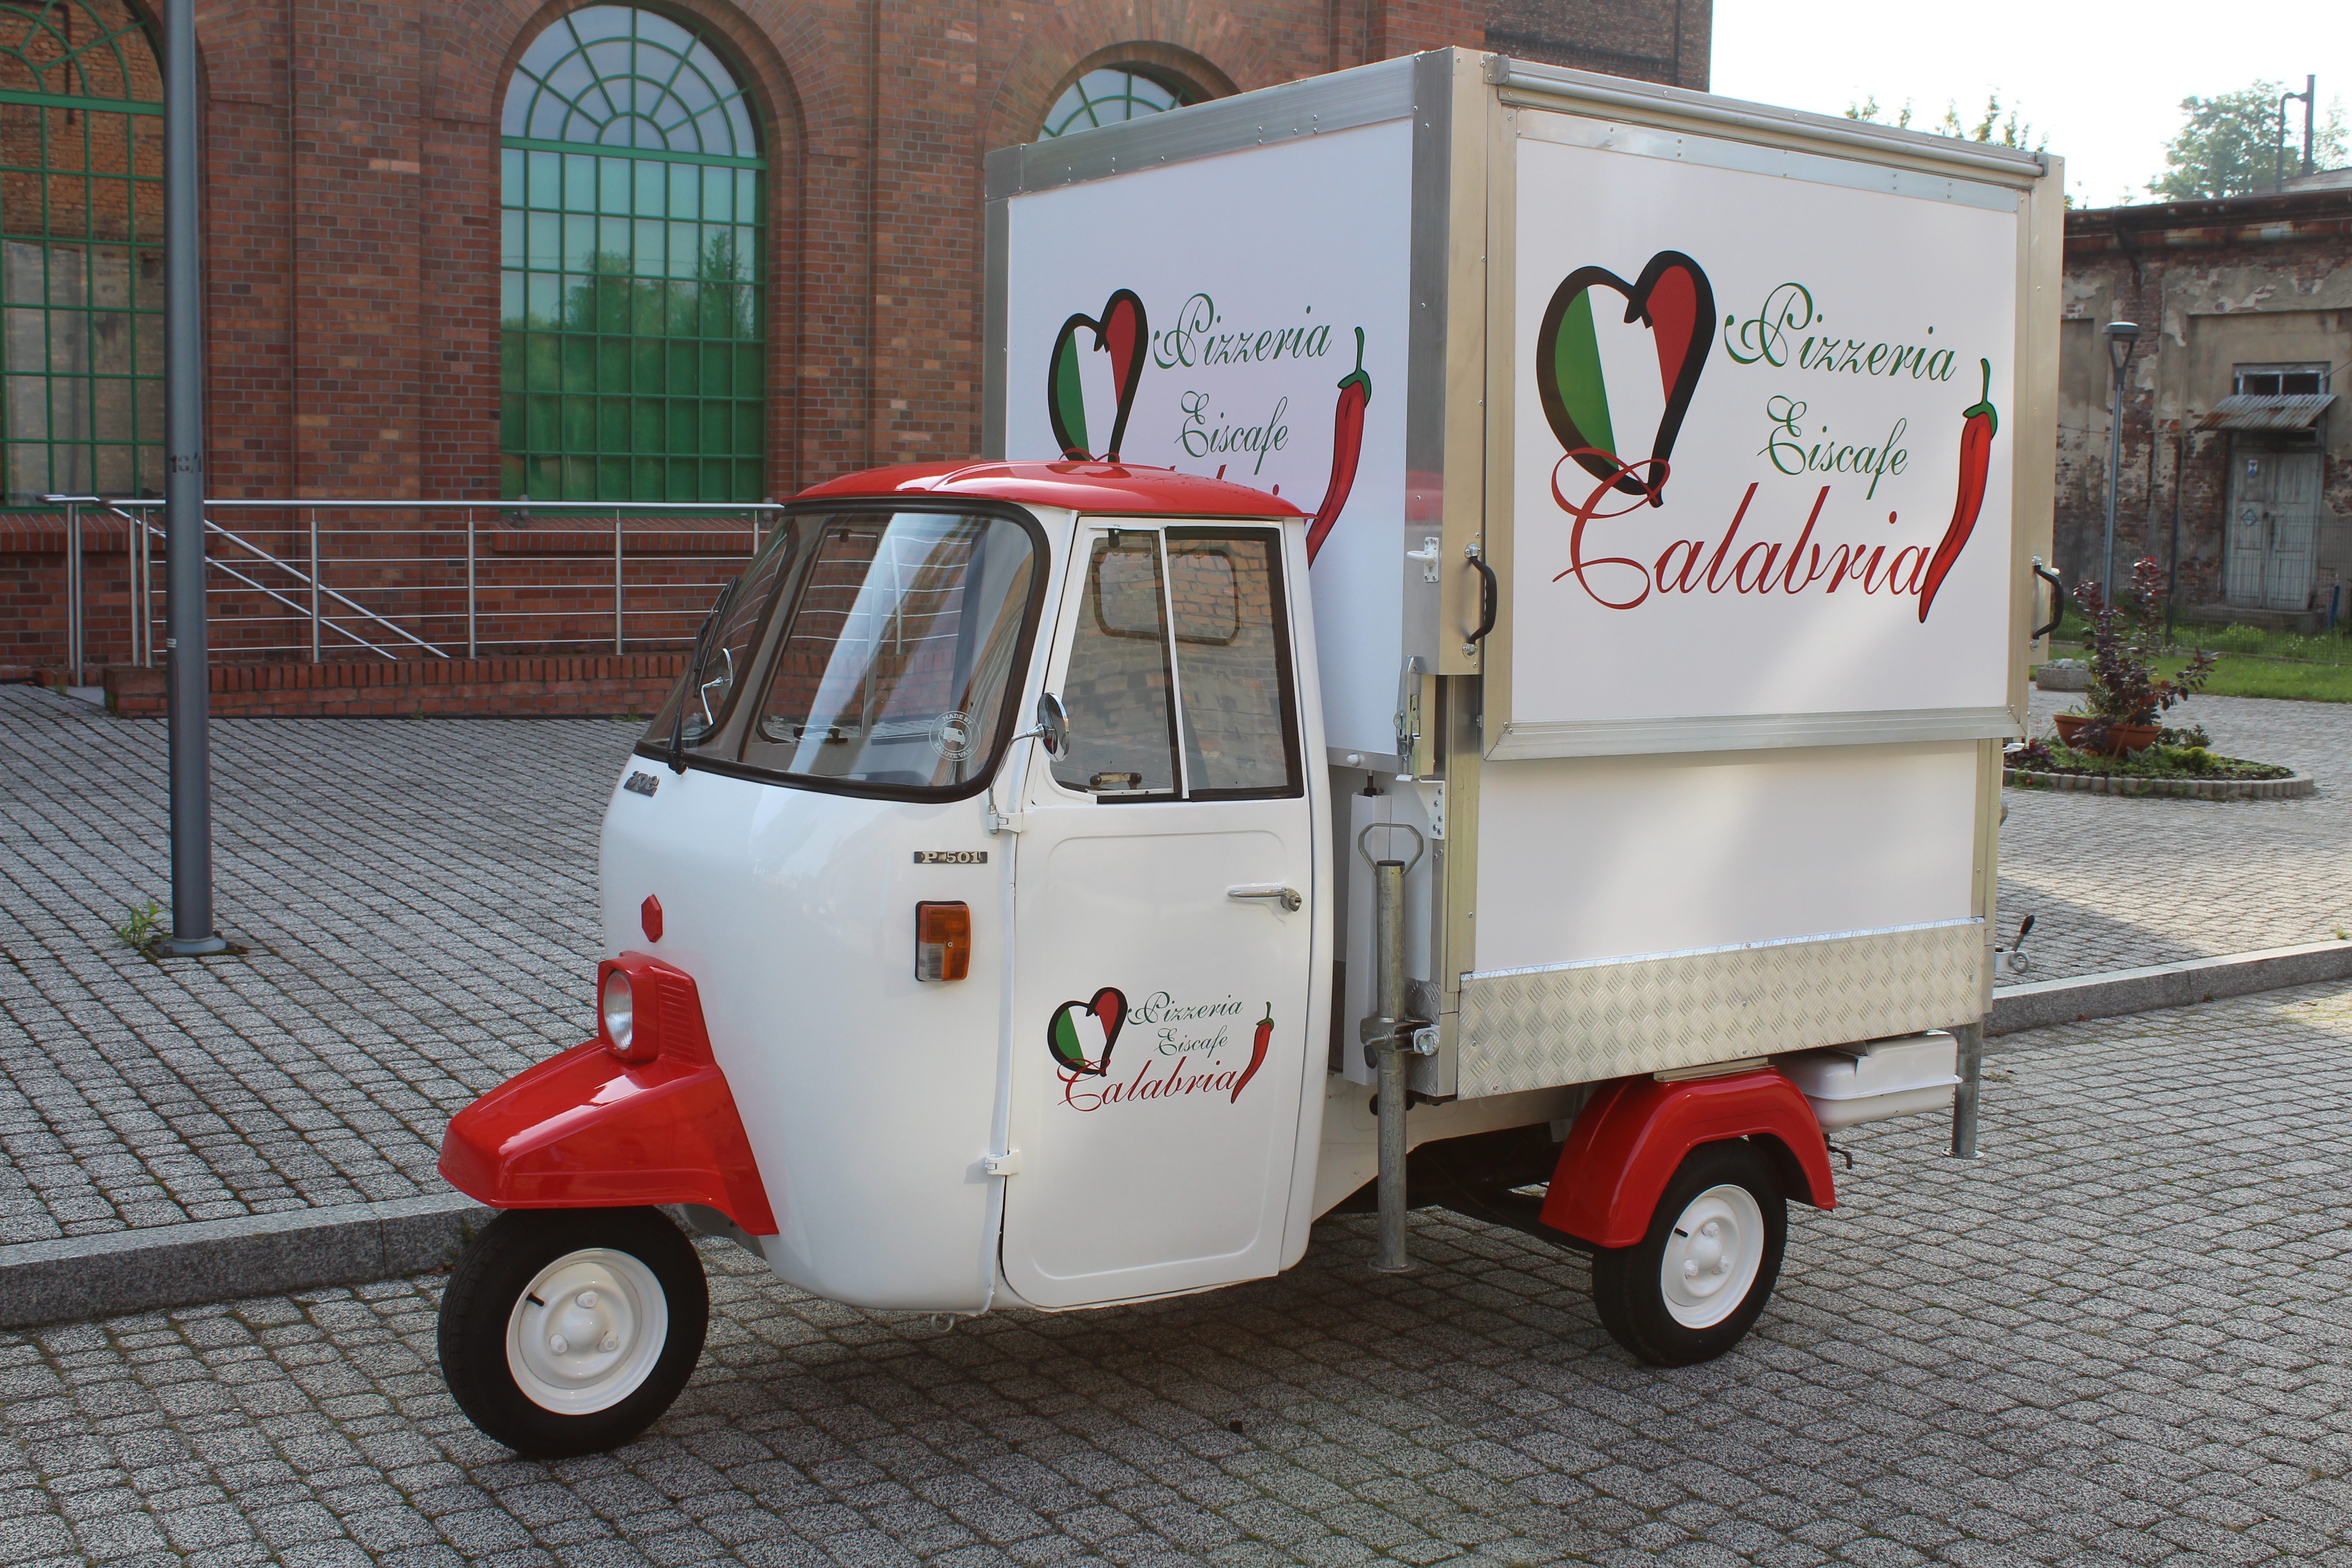 Piaggio Ape 501 converted for Ice-cream van